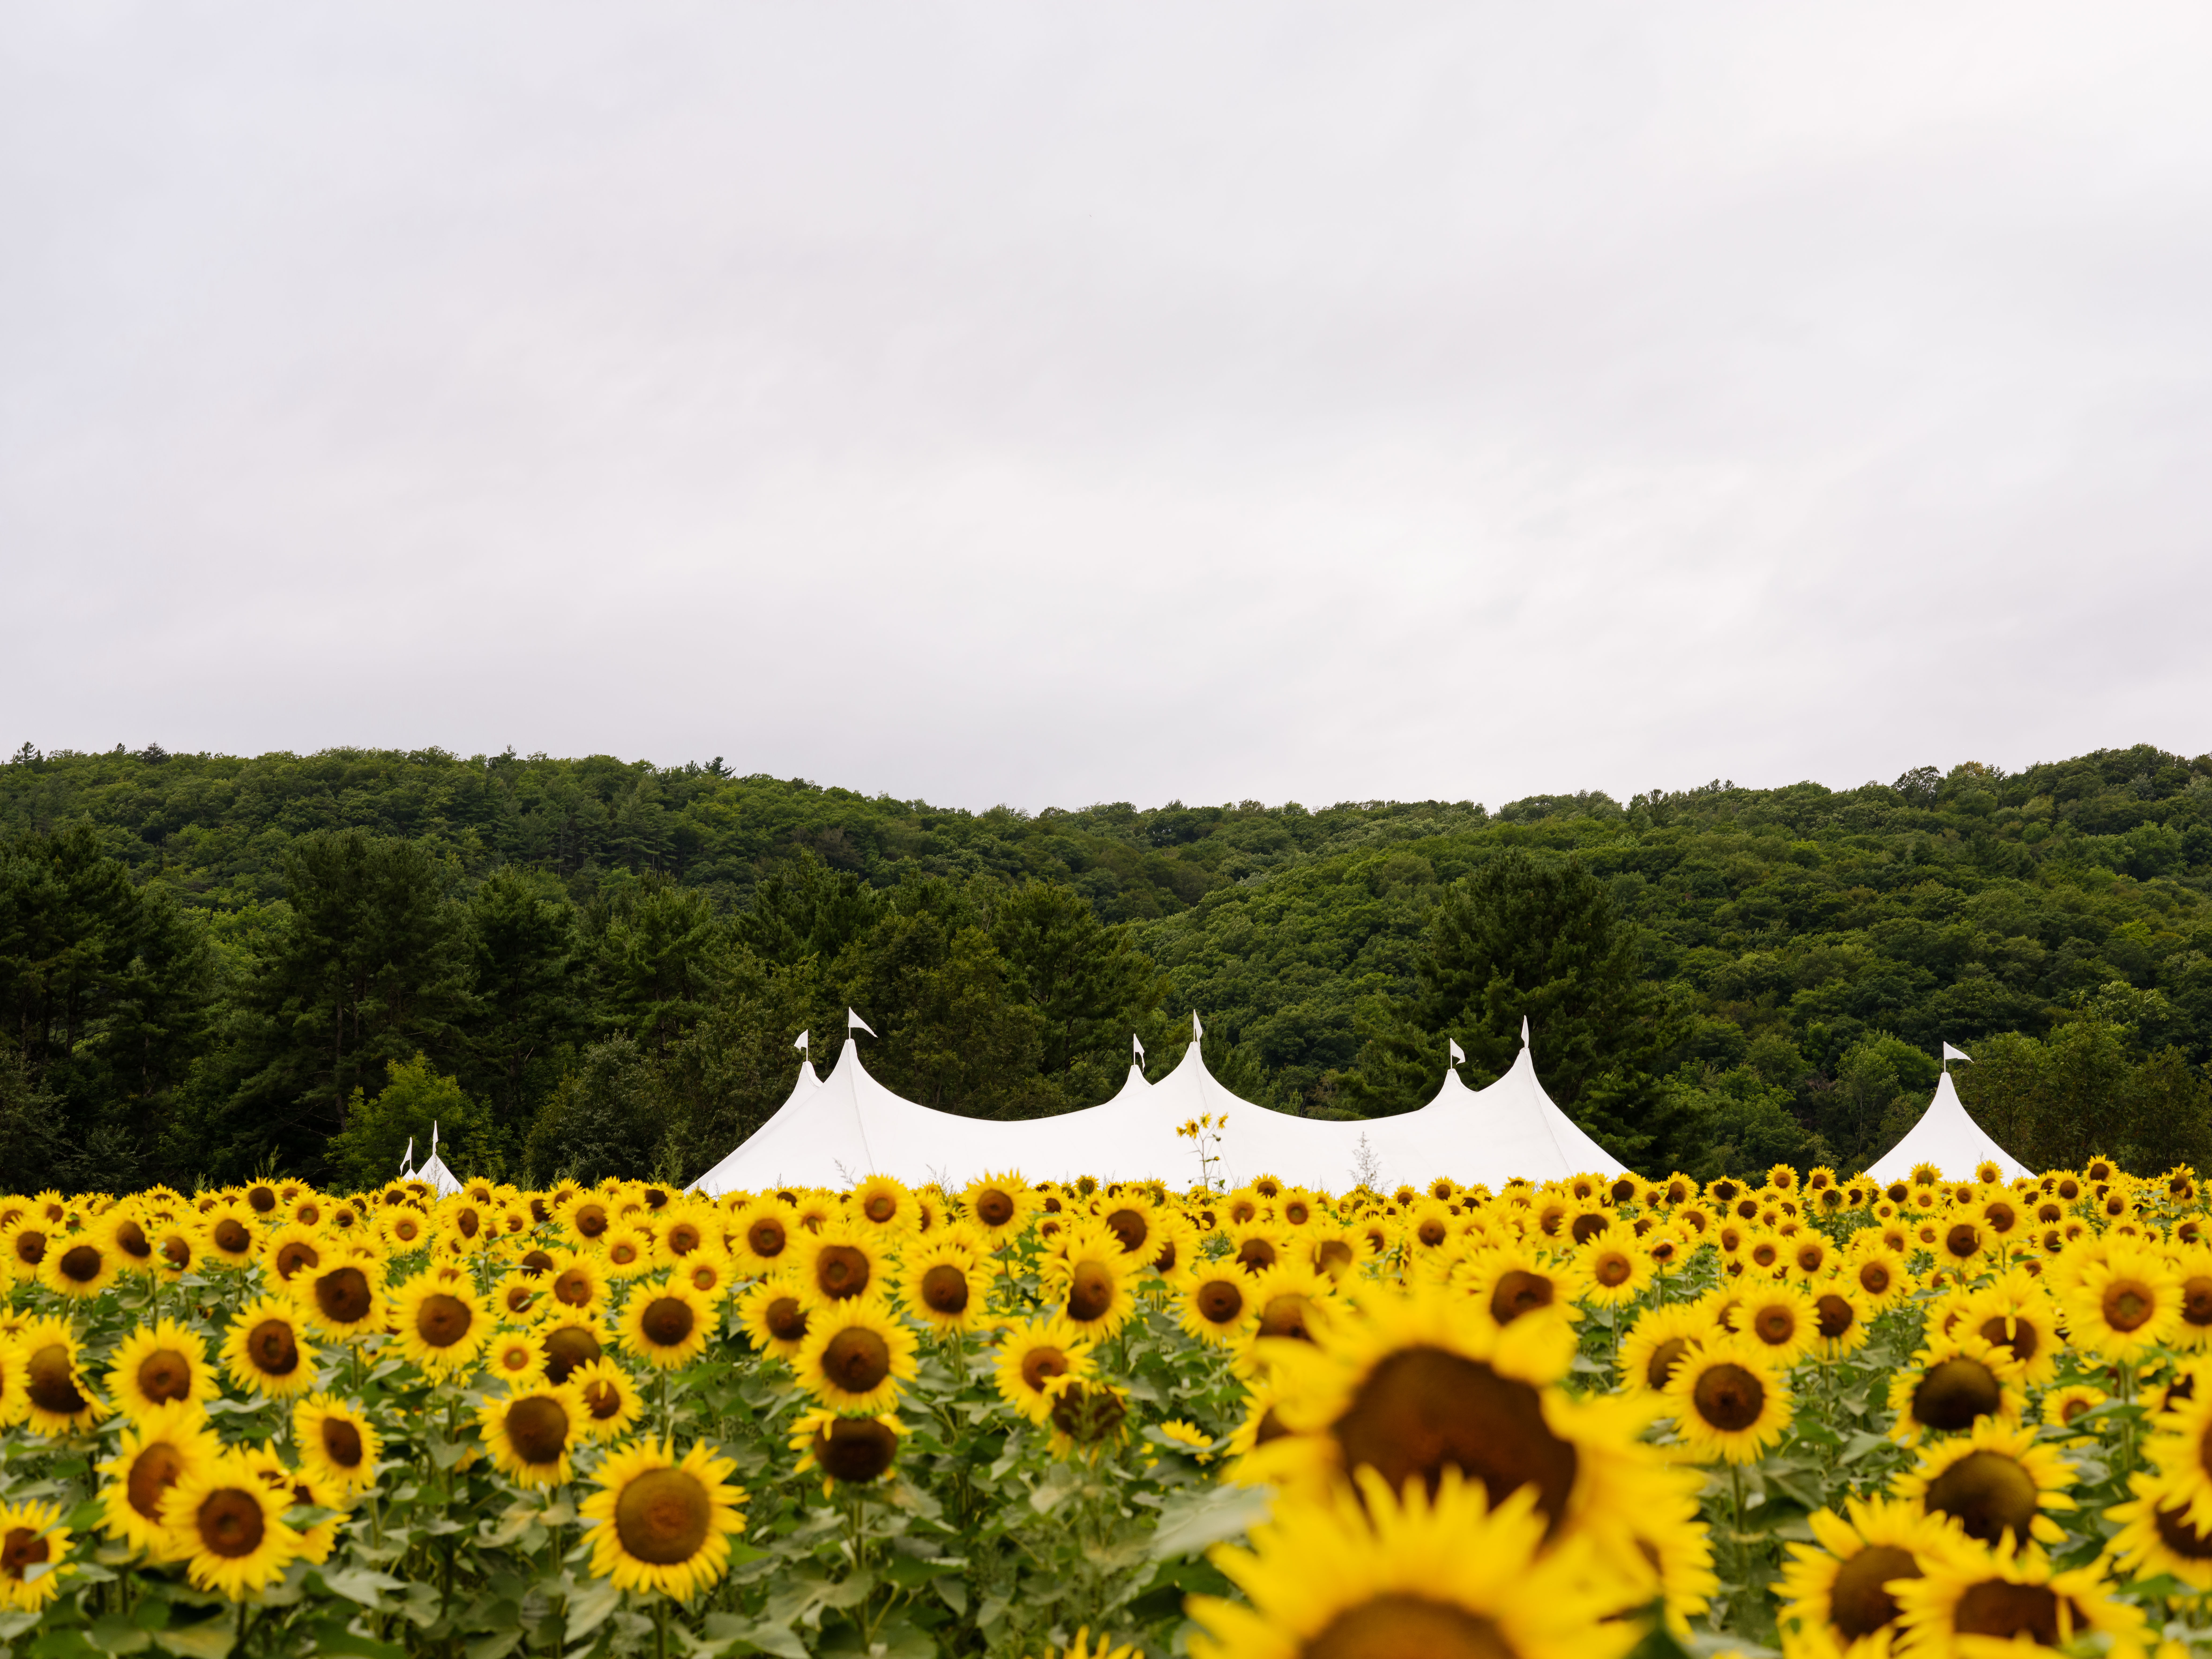 Sunflower Wedding